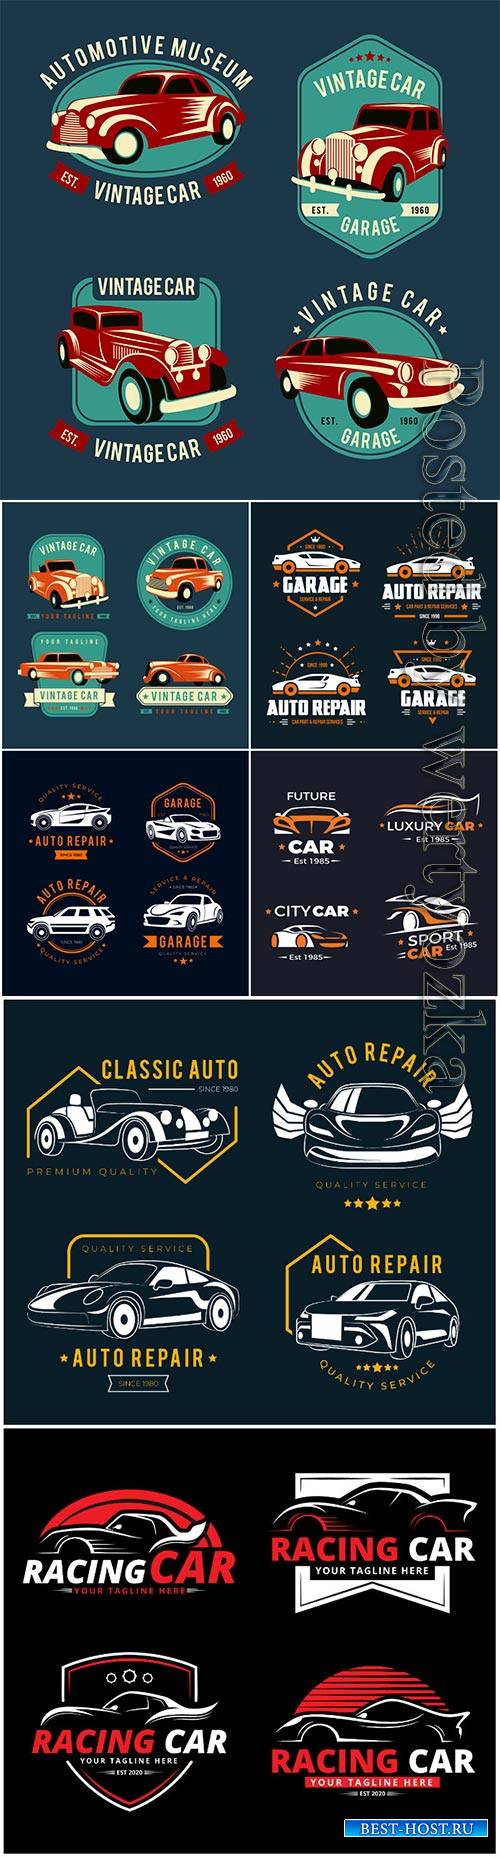 Flat design car logo vector collection